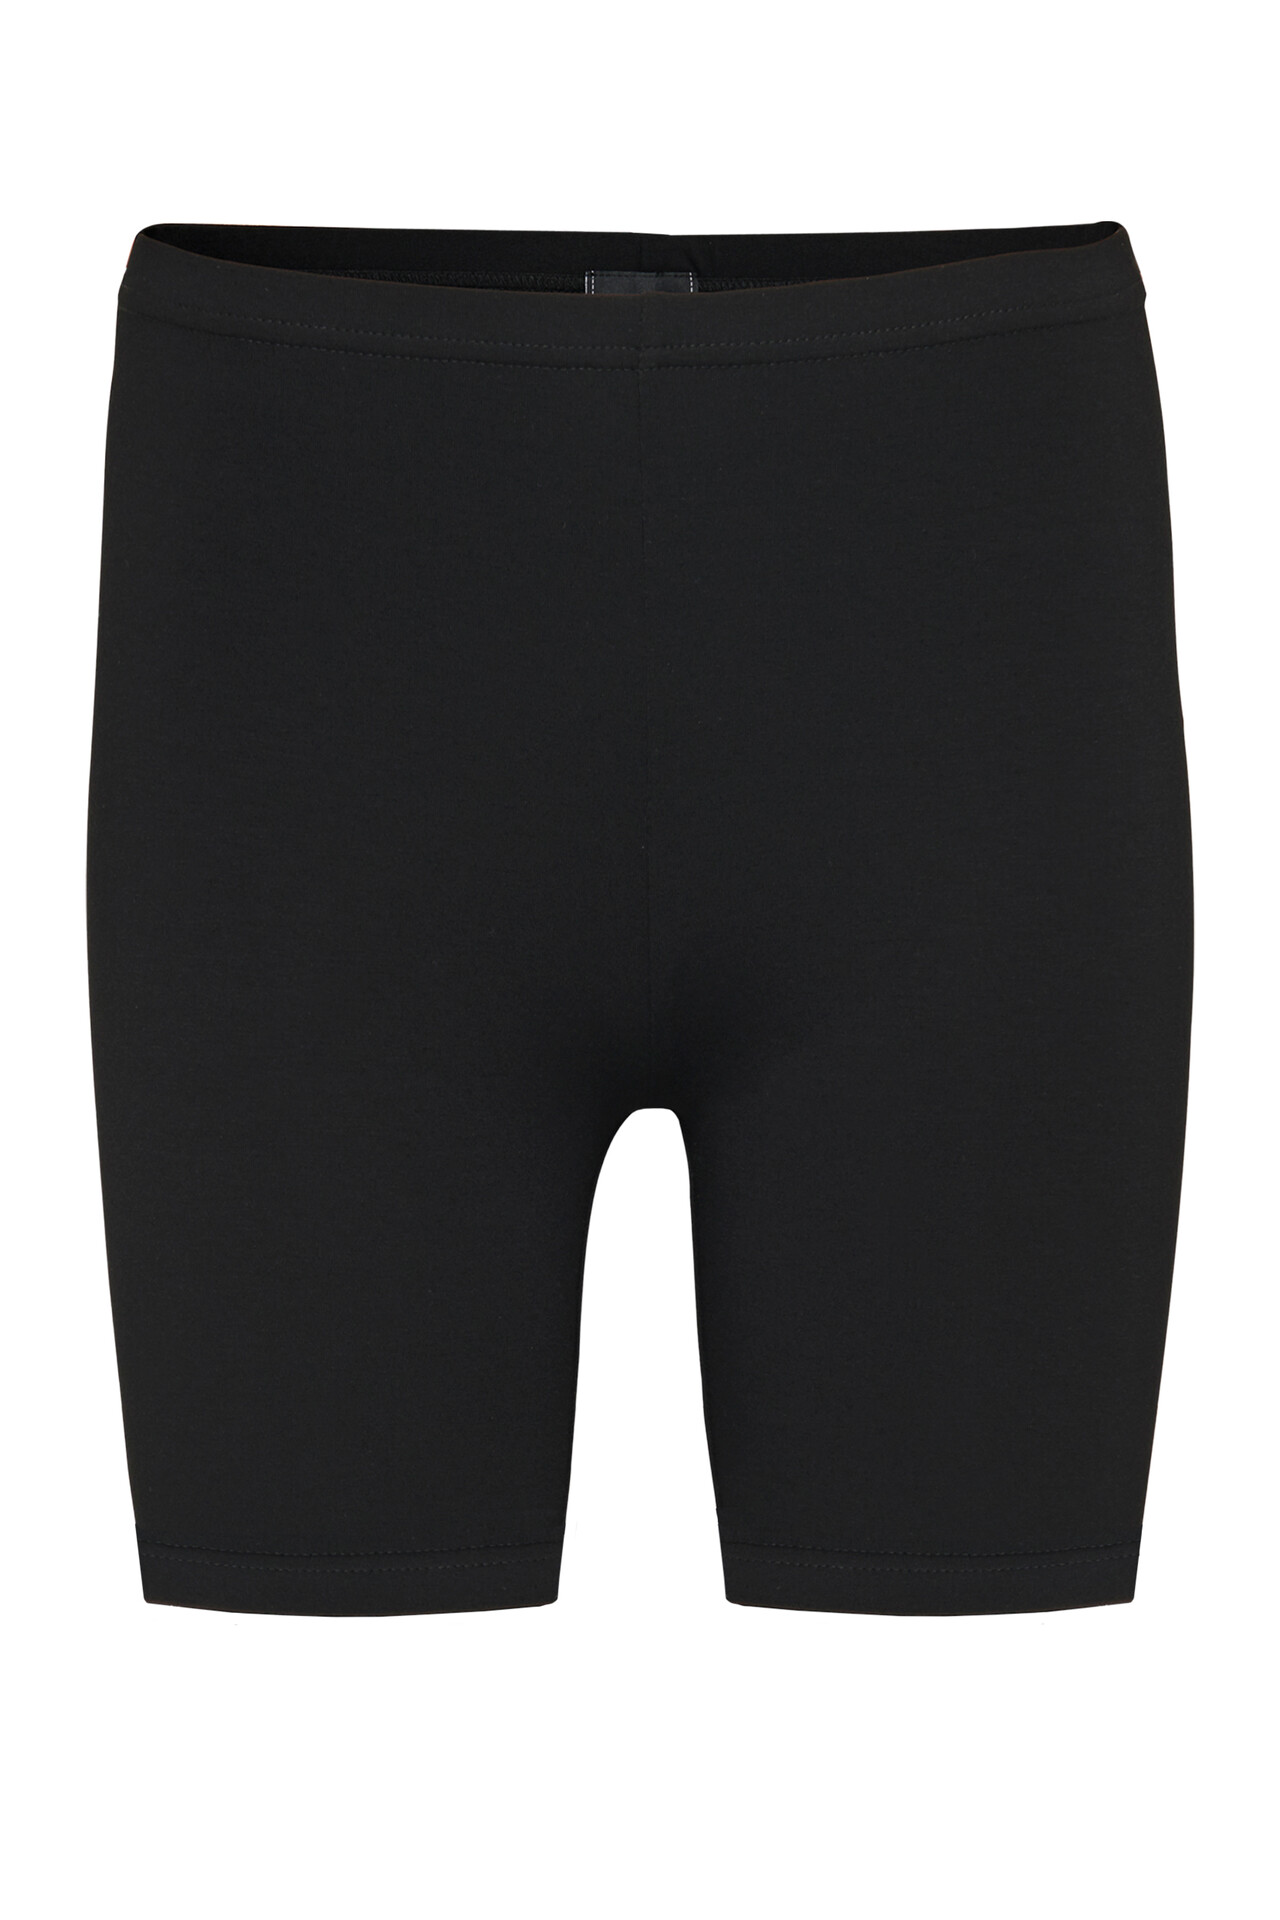 CRÉTON CRMamie shorts  (SORT L)